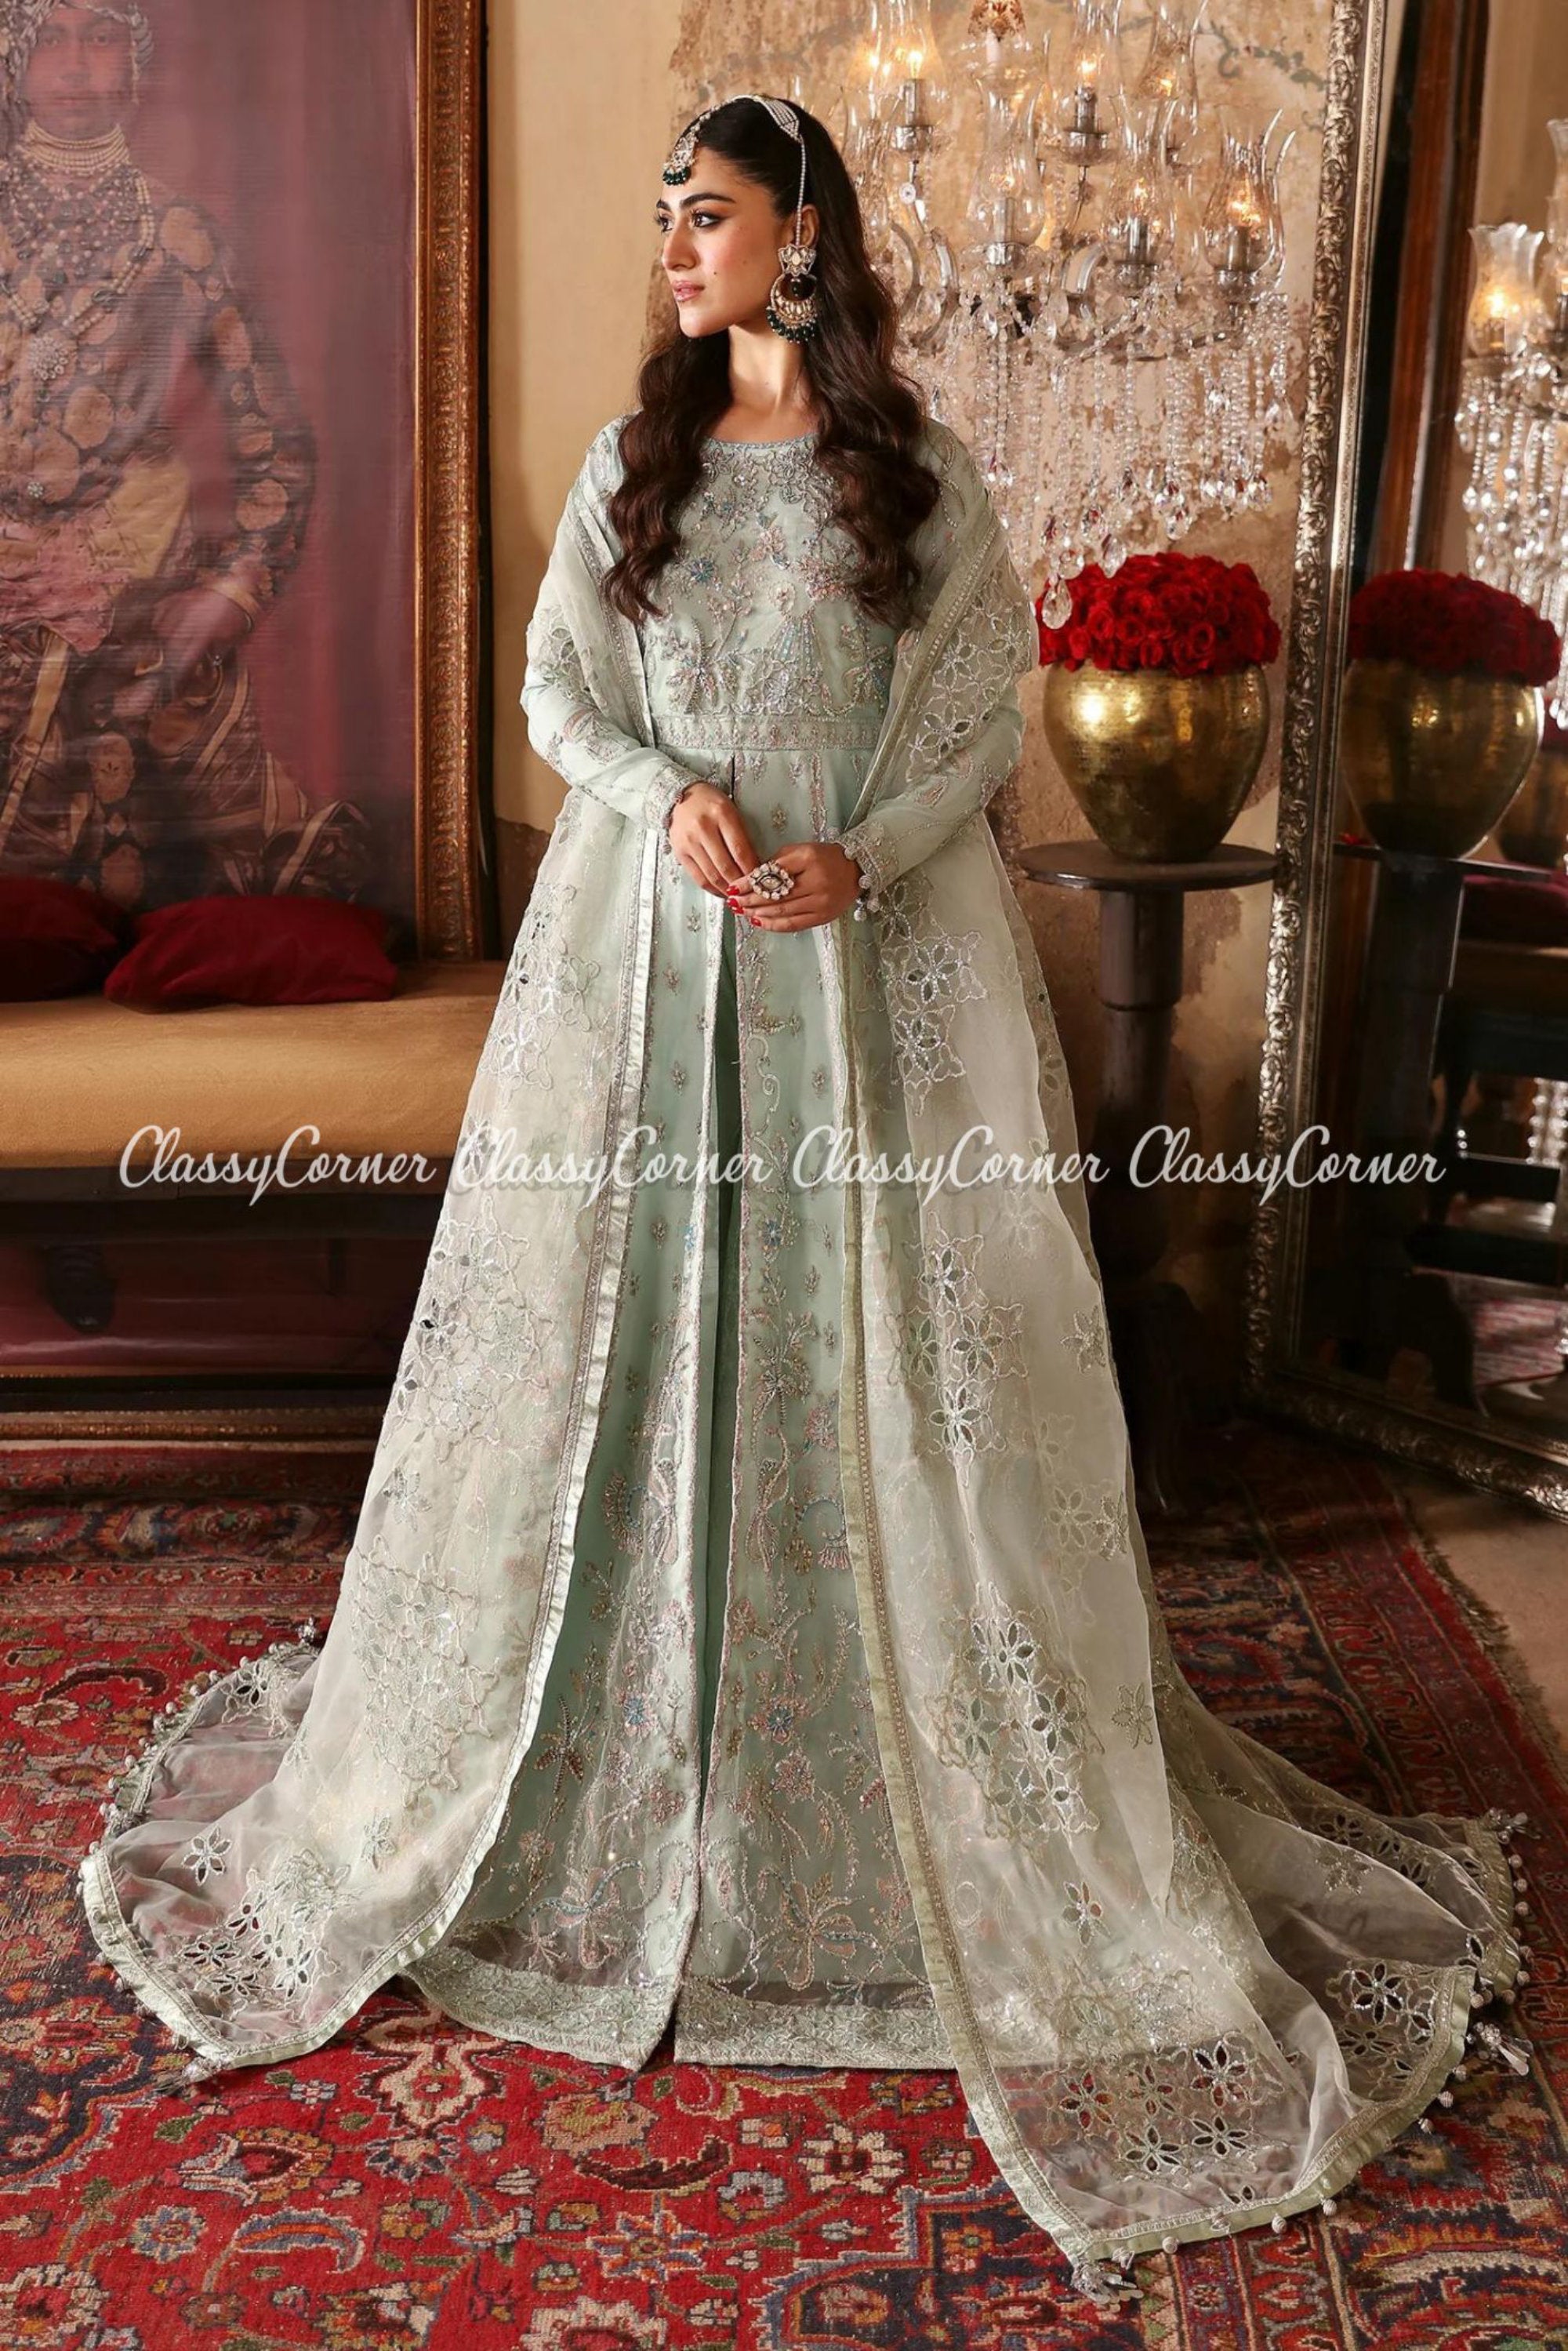 Buy Pakistani White Wedding Dress Online In India - Etsy India